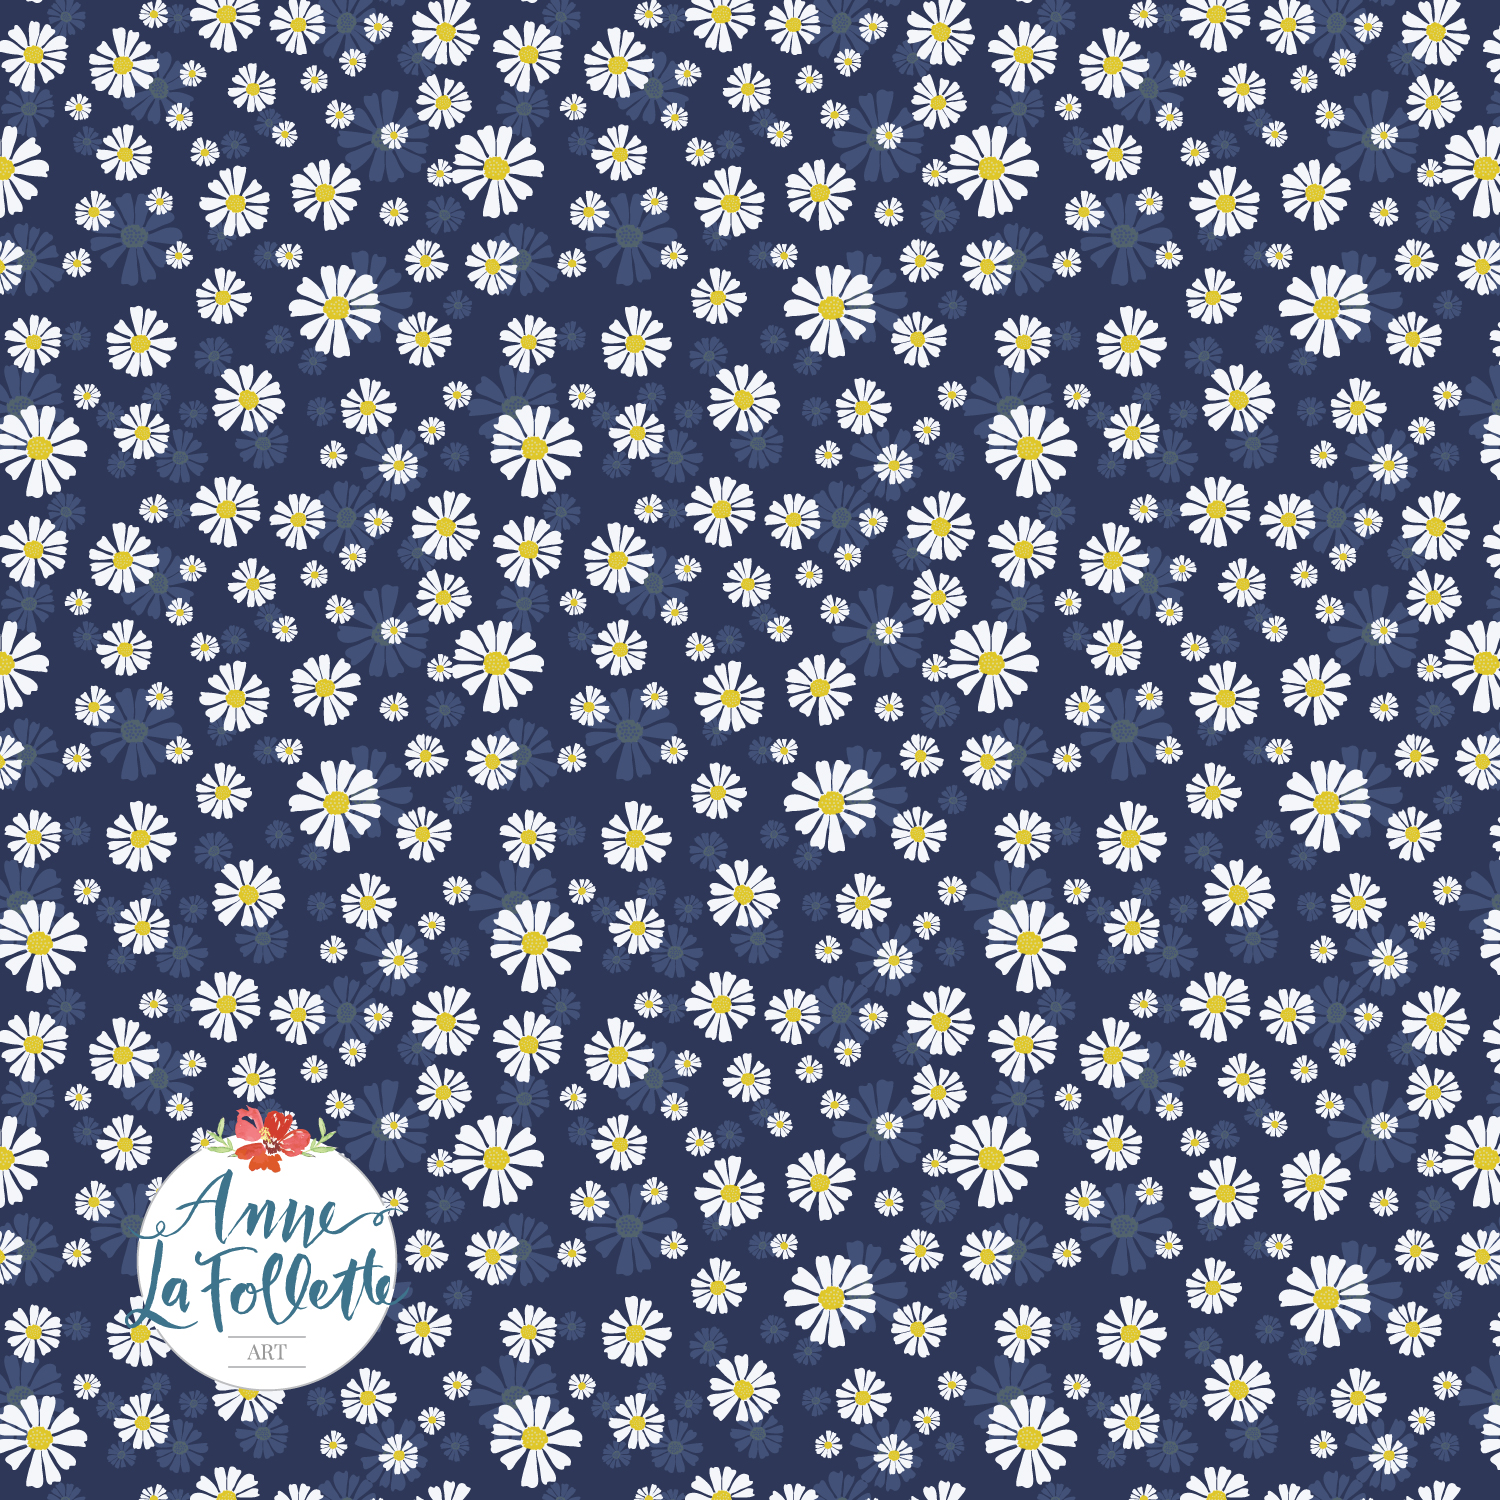 new-daisy-pattern.jpg